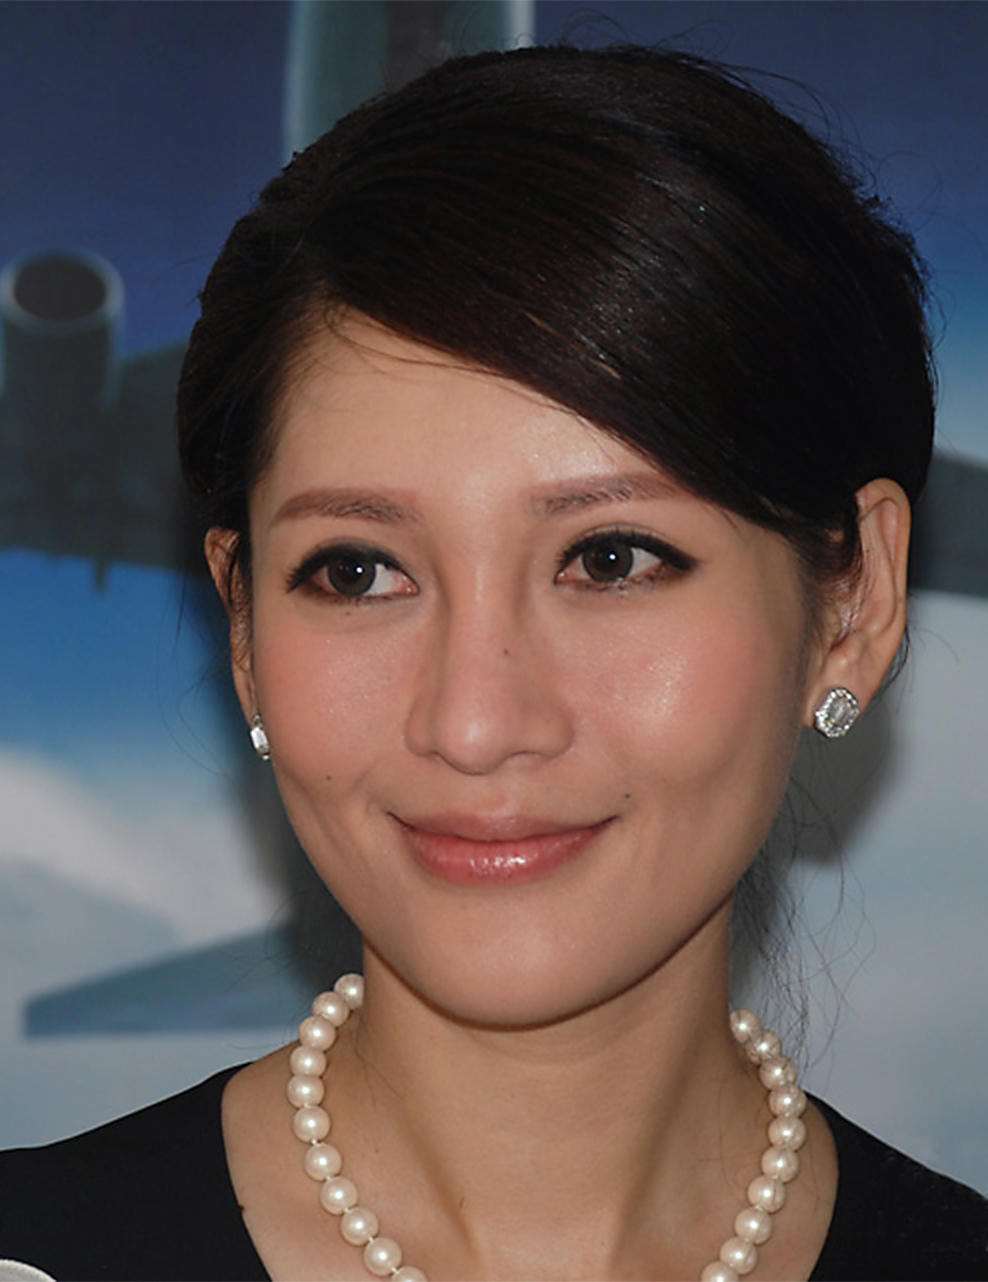 TV host Shen Xing